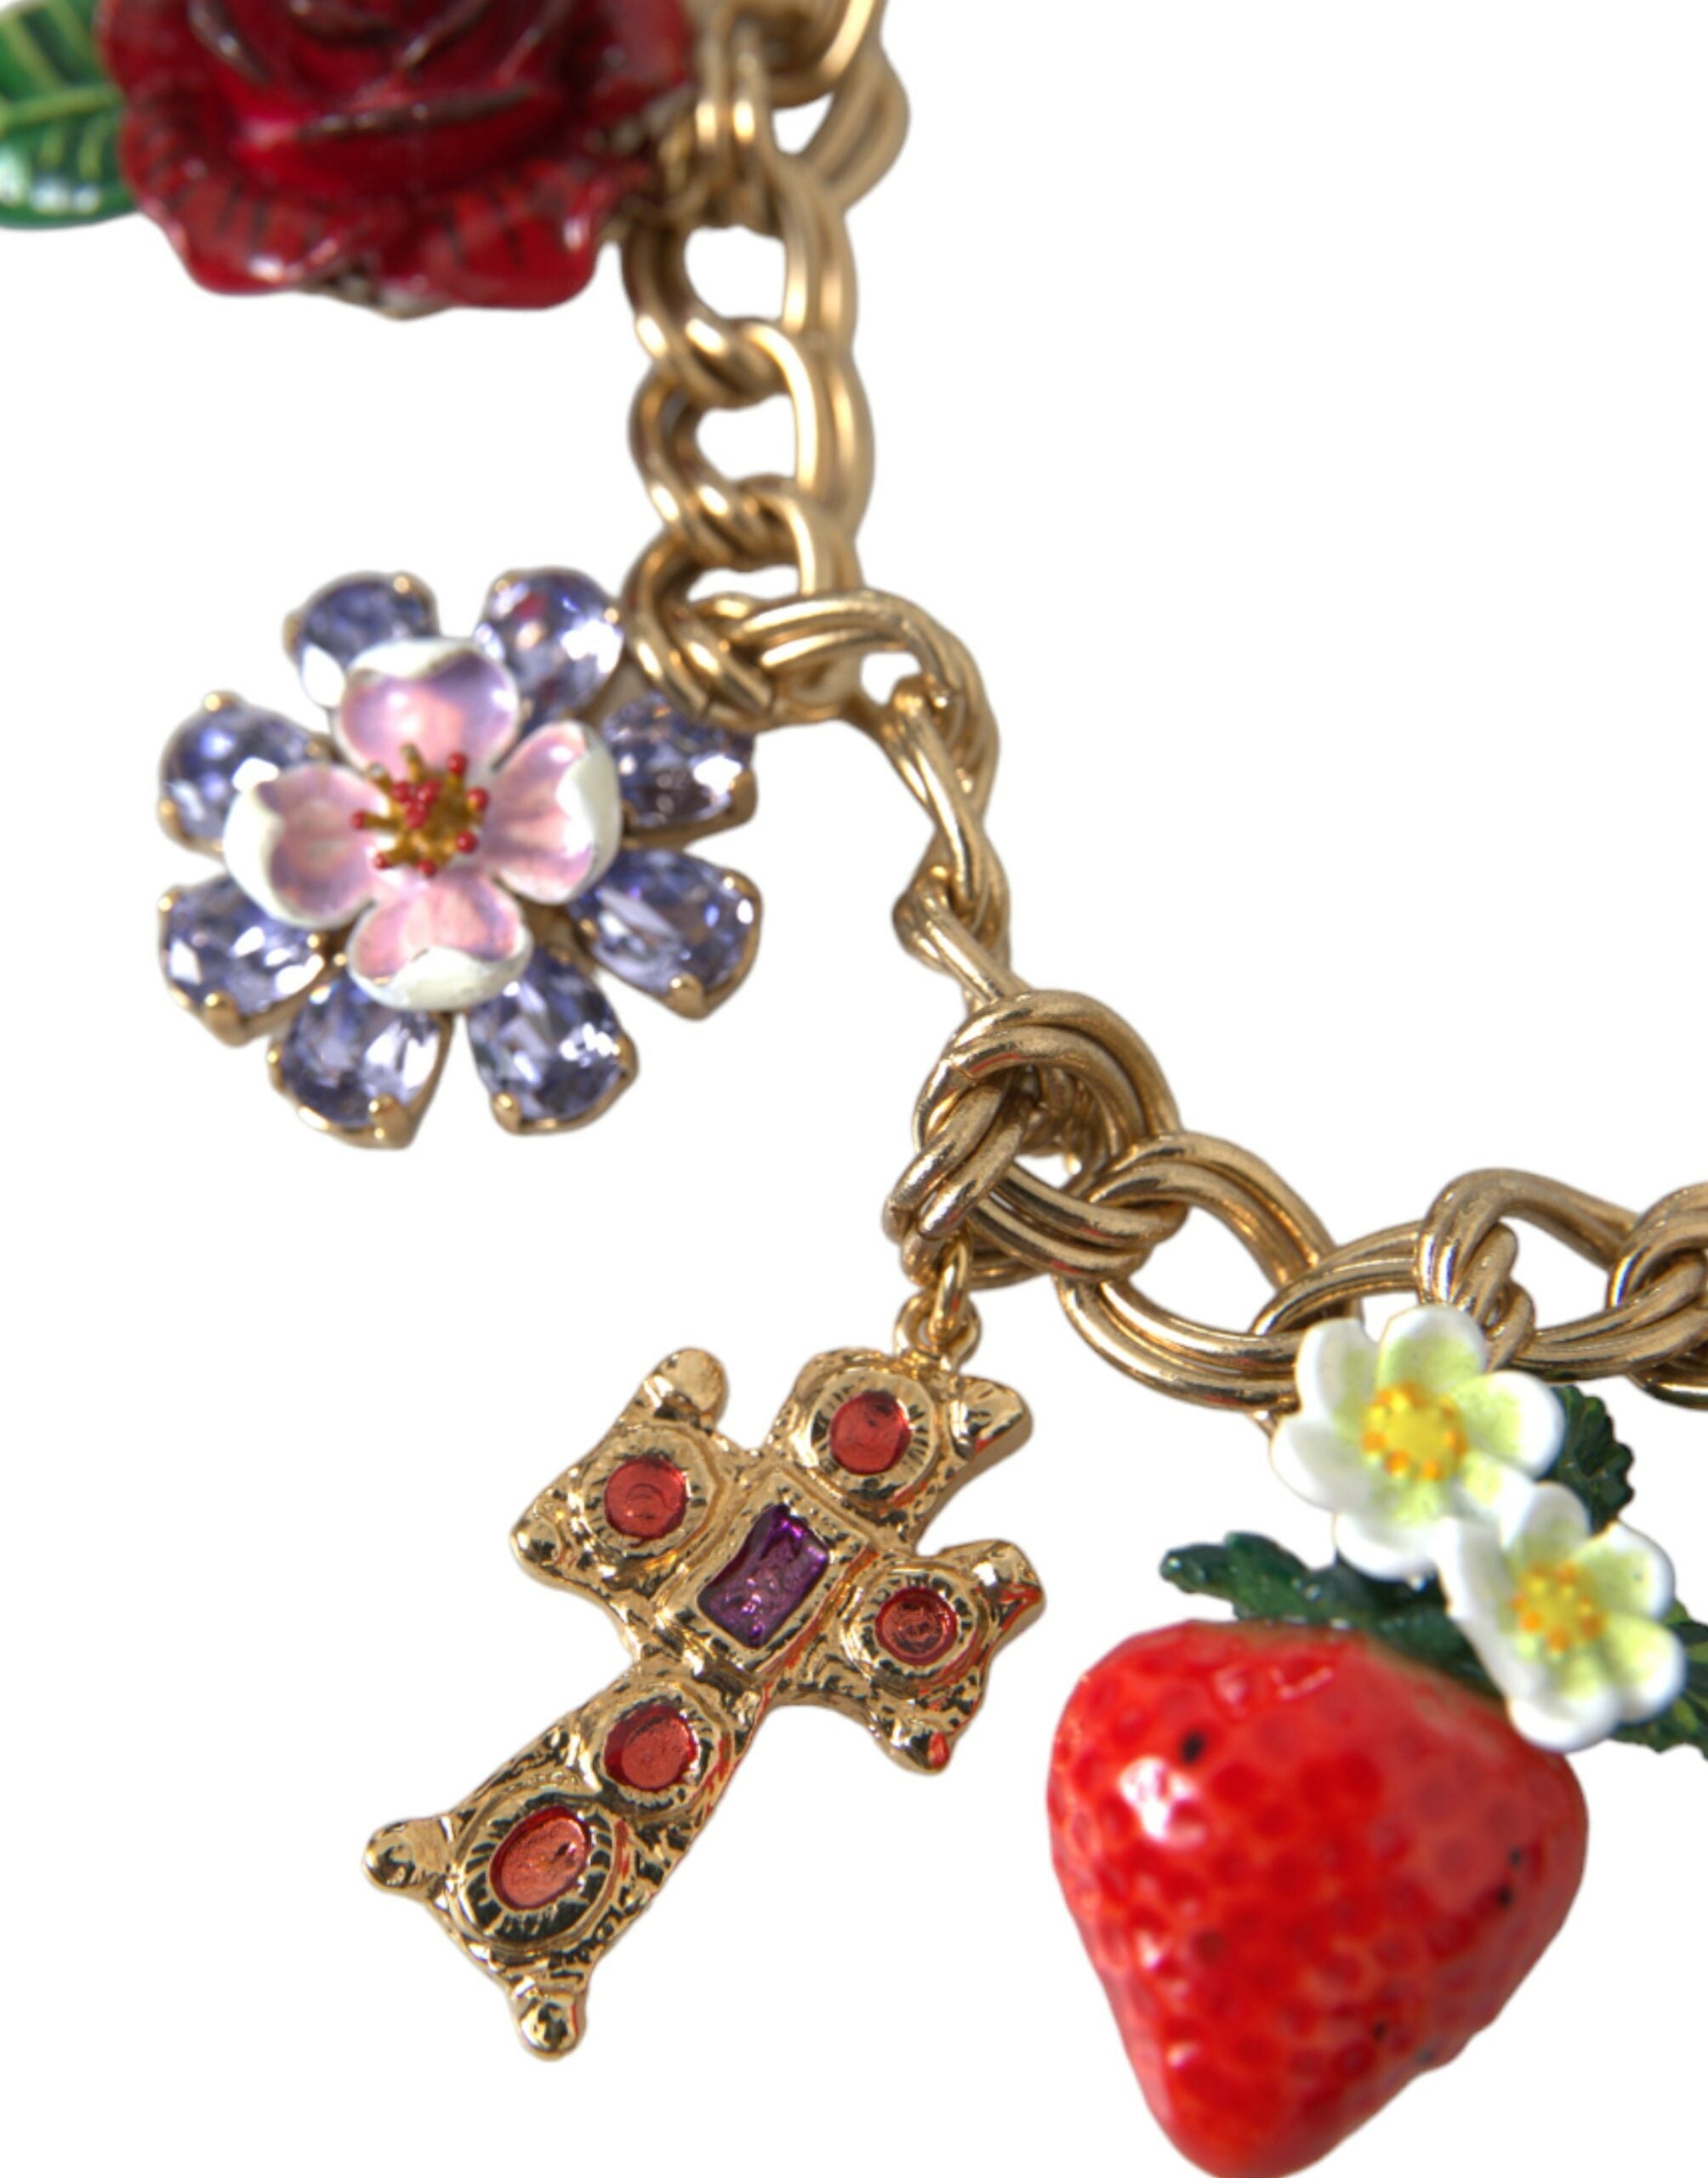 Dolce & Gabbana Halskette mit goldener Kette und Rosenkreuz sowie Erdbeer-Stern-Anhänger